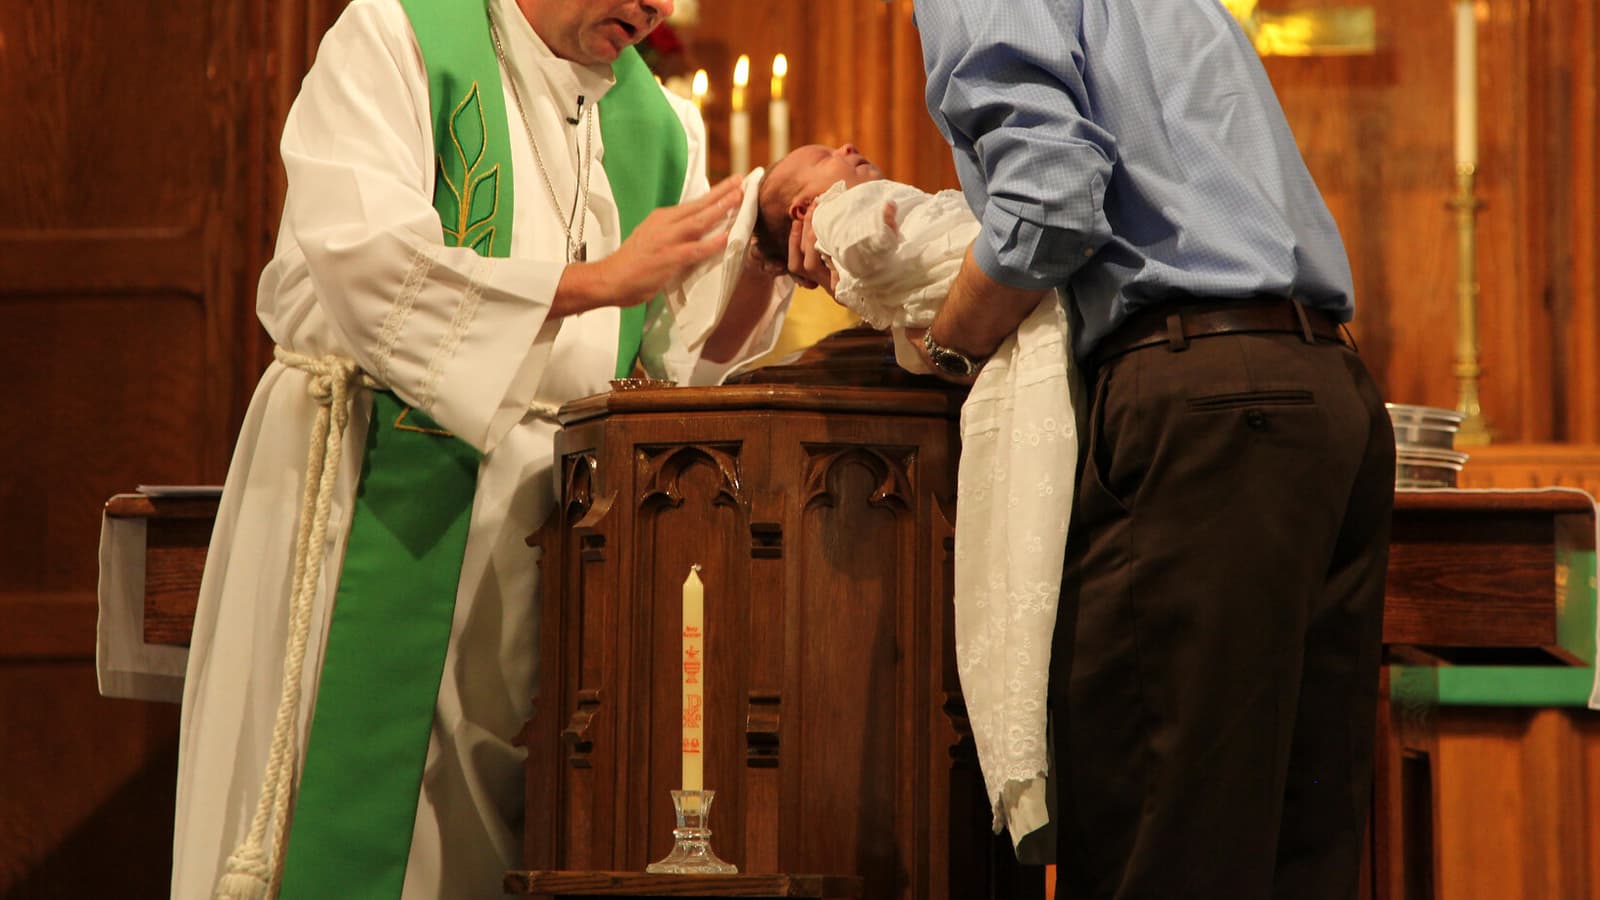 États-Unis : Un prêtre a baptisé des milliers de croyants avec une formule erronée ! Un-religieux-en-train-de-baptiser-un-nourrisson-dans-un-eglise-Photo-d-illustration-1236830